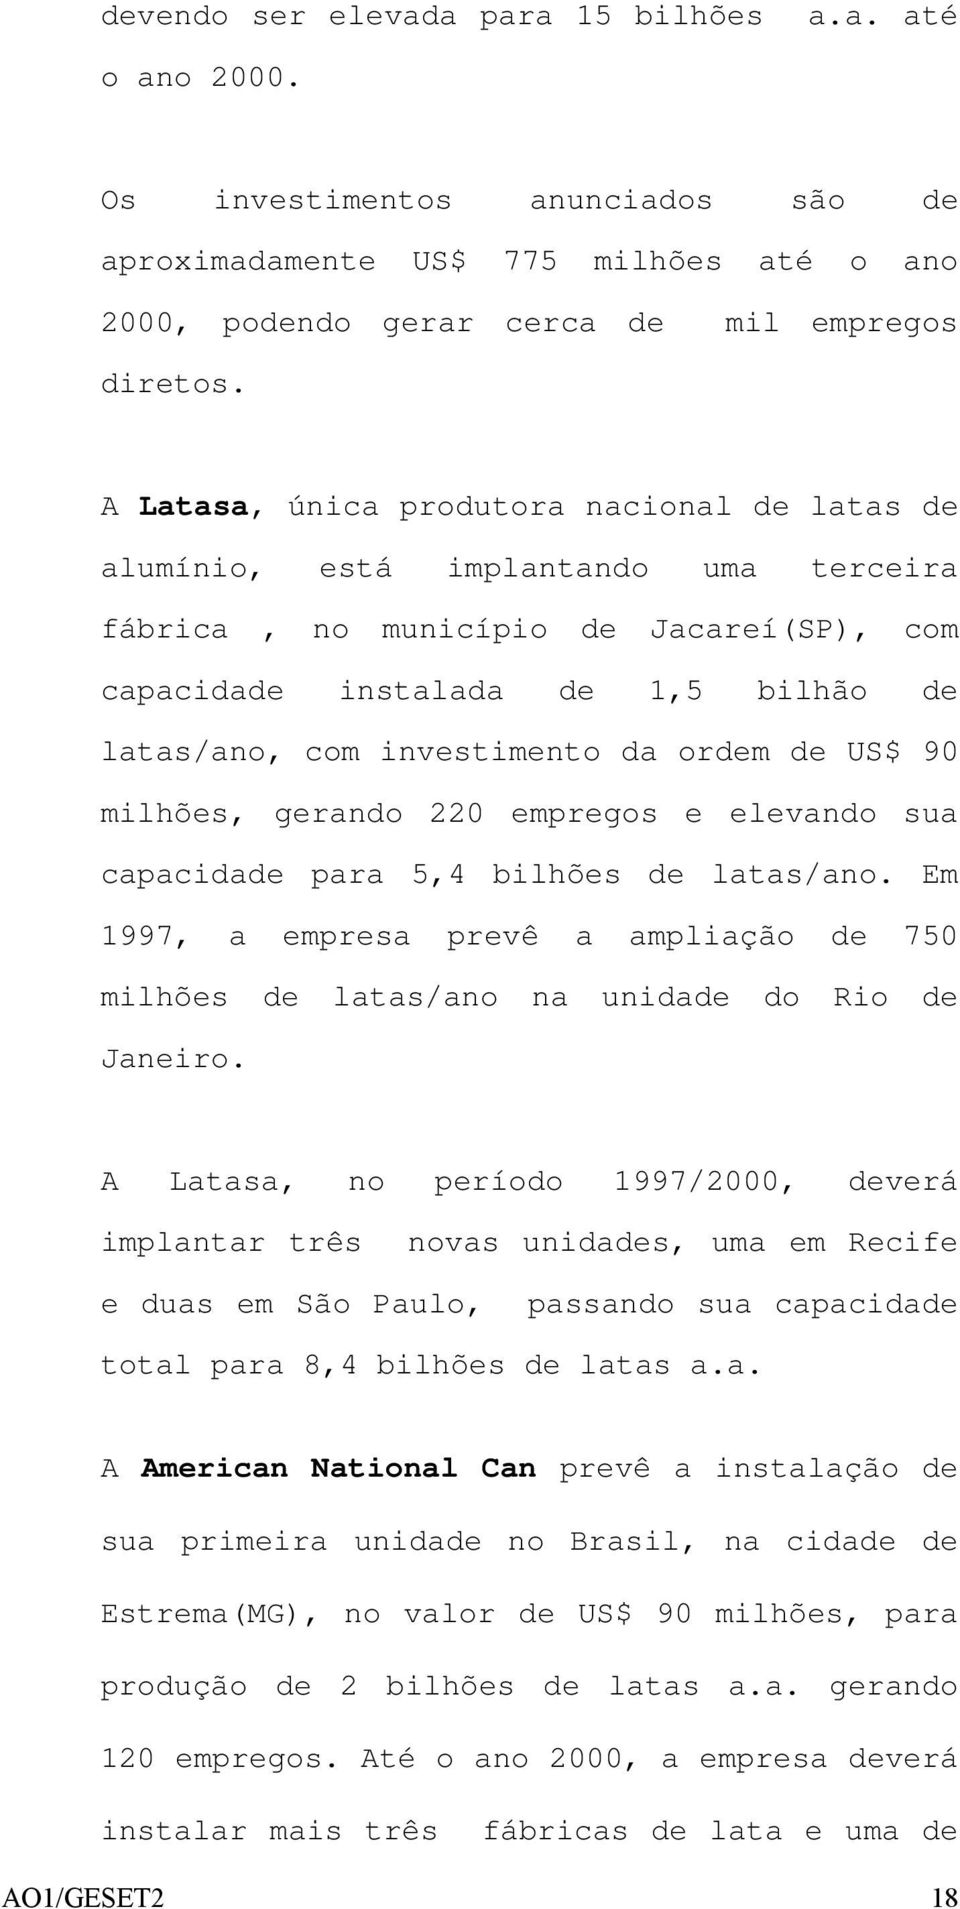 ordem de US$ 90 milhões, gerando 220 empregos e elevando sua capacidade para 5,4 bilhões de latas/ano. Em 1997, a empresa prevê a ampliação de 750 milhões de latas/ano na unidade do Rio de Janeiro.